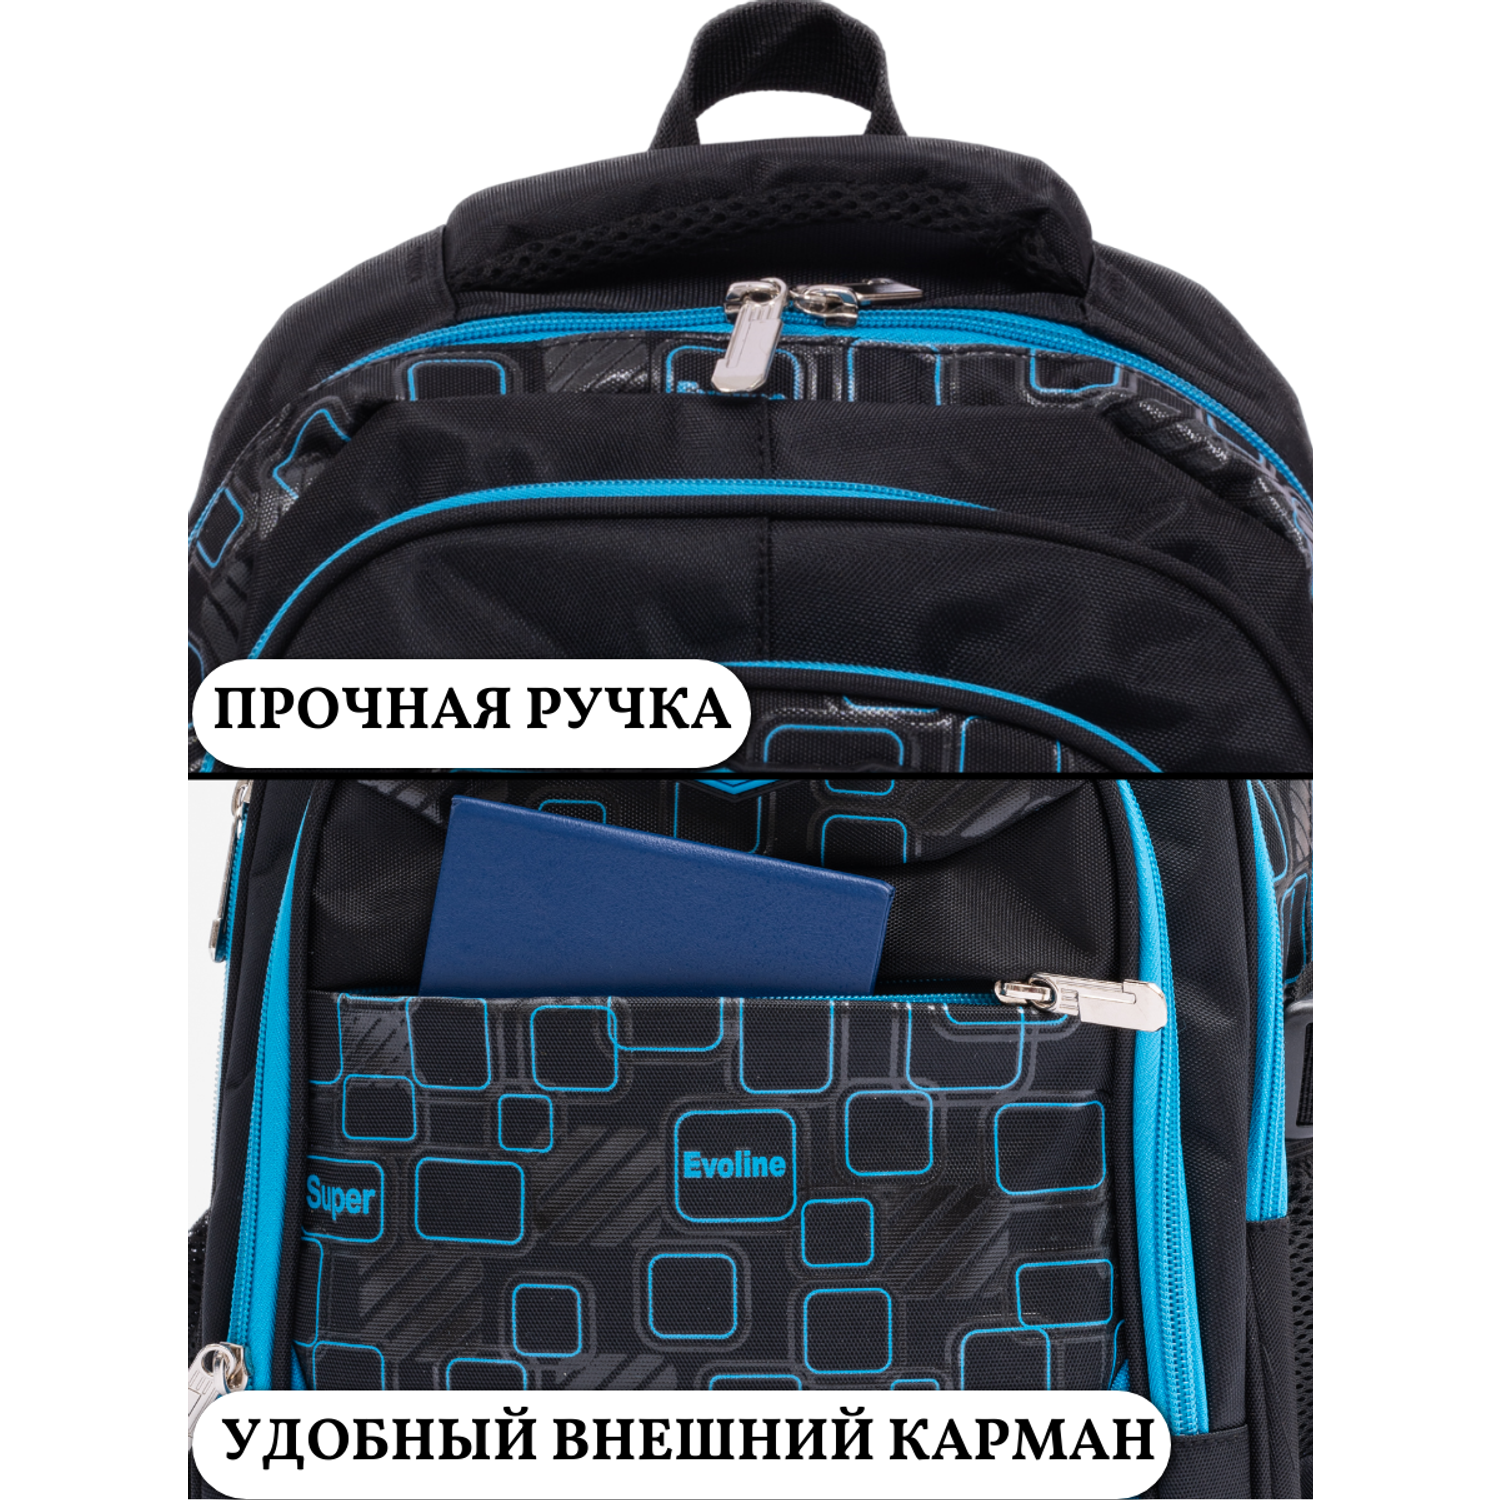 Рюкзак школьный Evoline черный голубой EVO-157-6 - фото 11